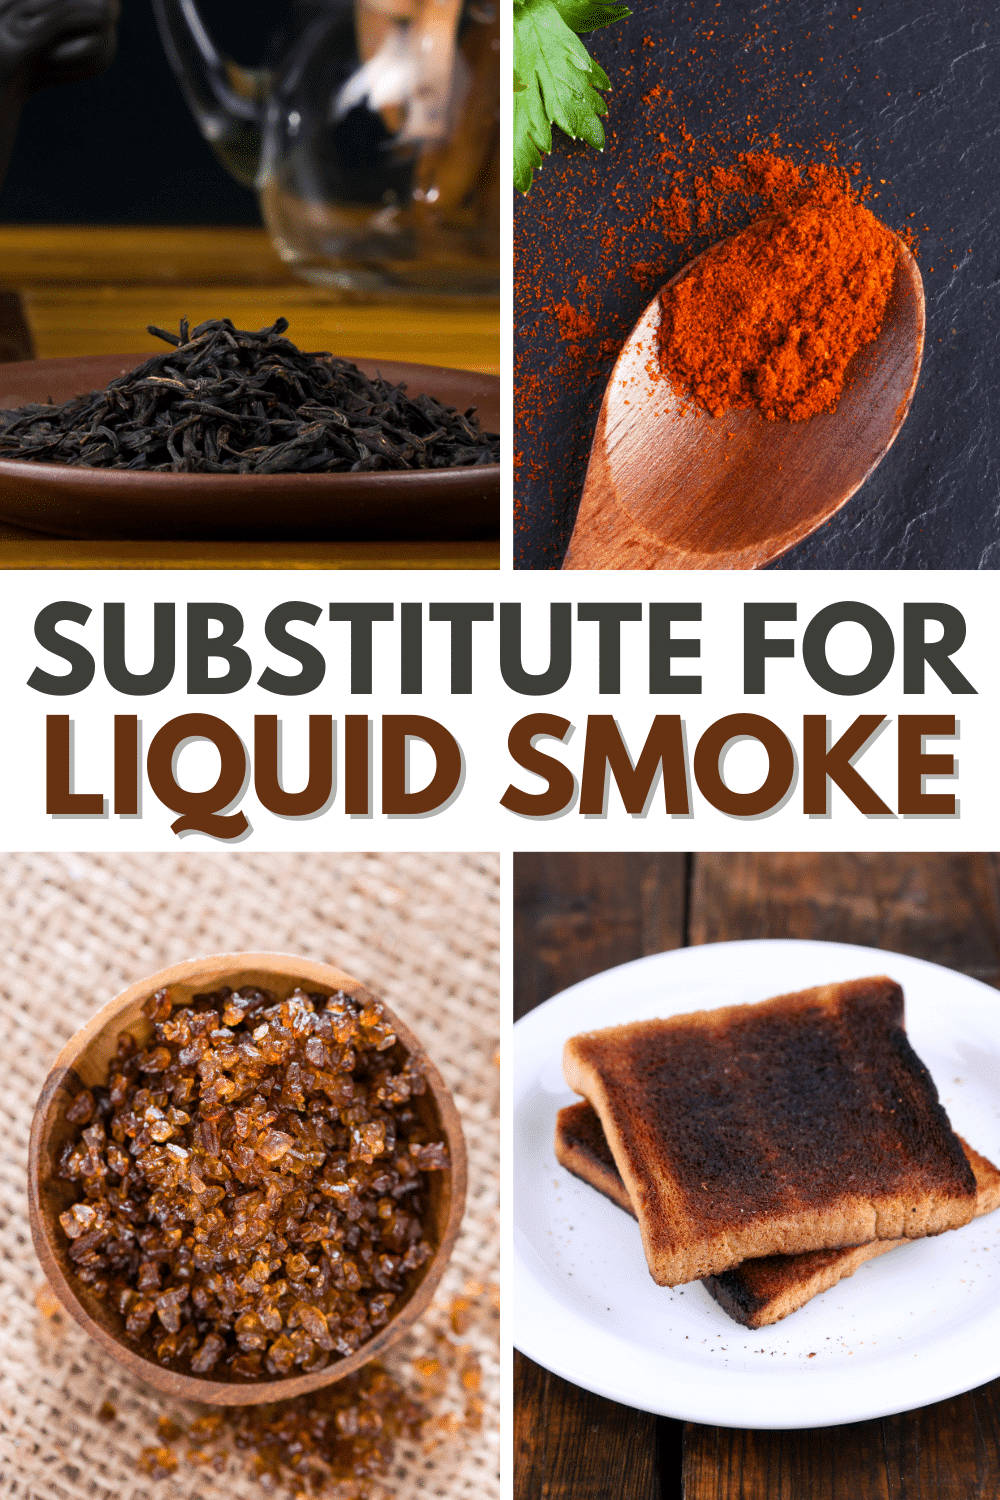 Liquid smoke substitutes | liquid smoke substitutes | liquid smoke substitutes | liquid smoke substitutes | liquid smoke substitutes | liquid smoke substitutes |.